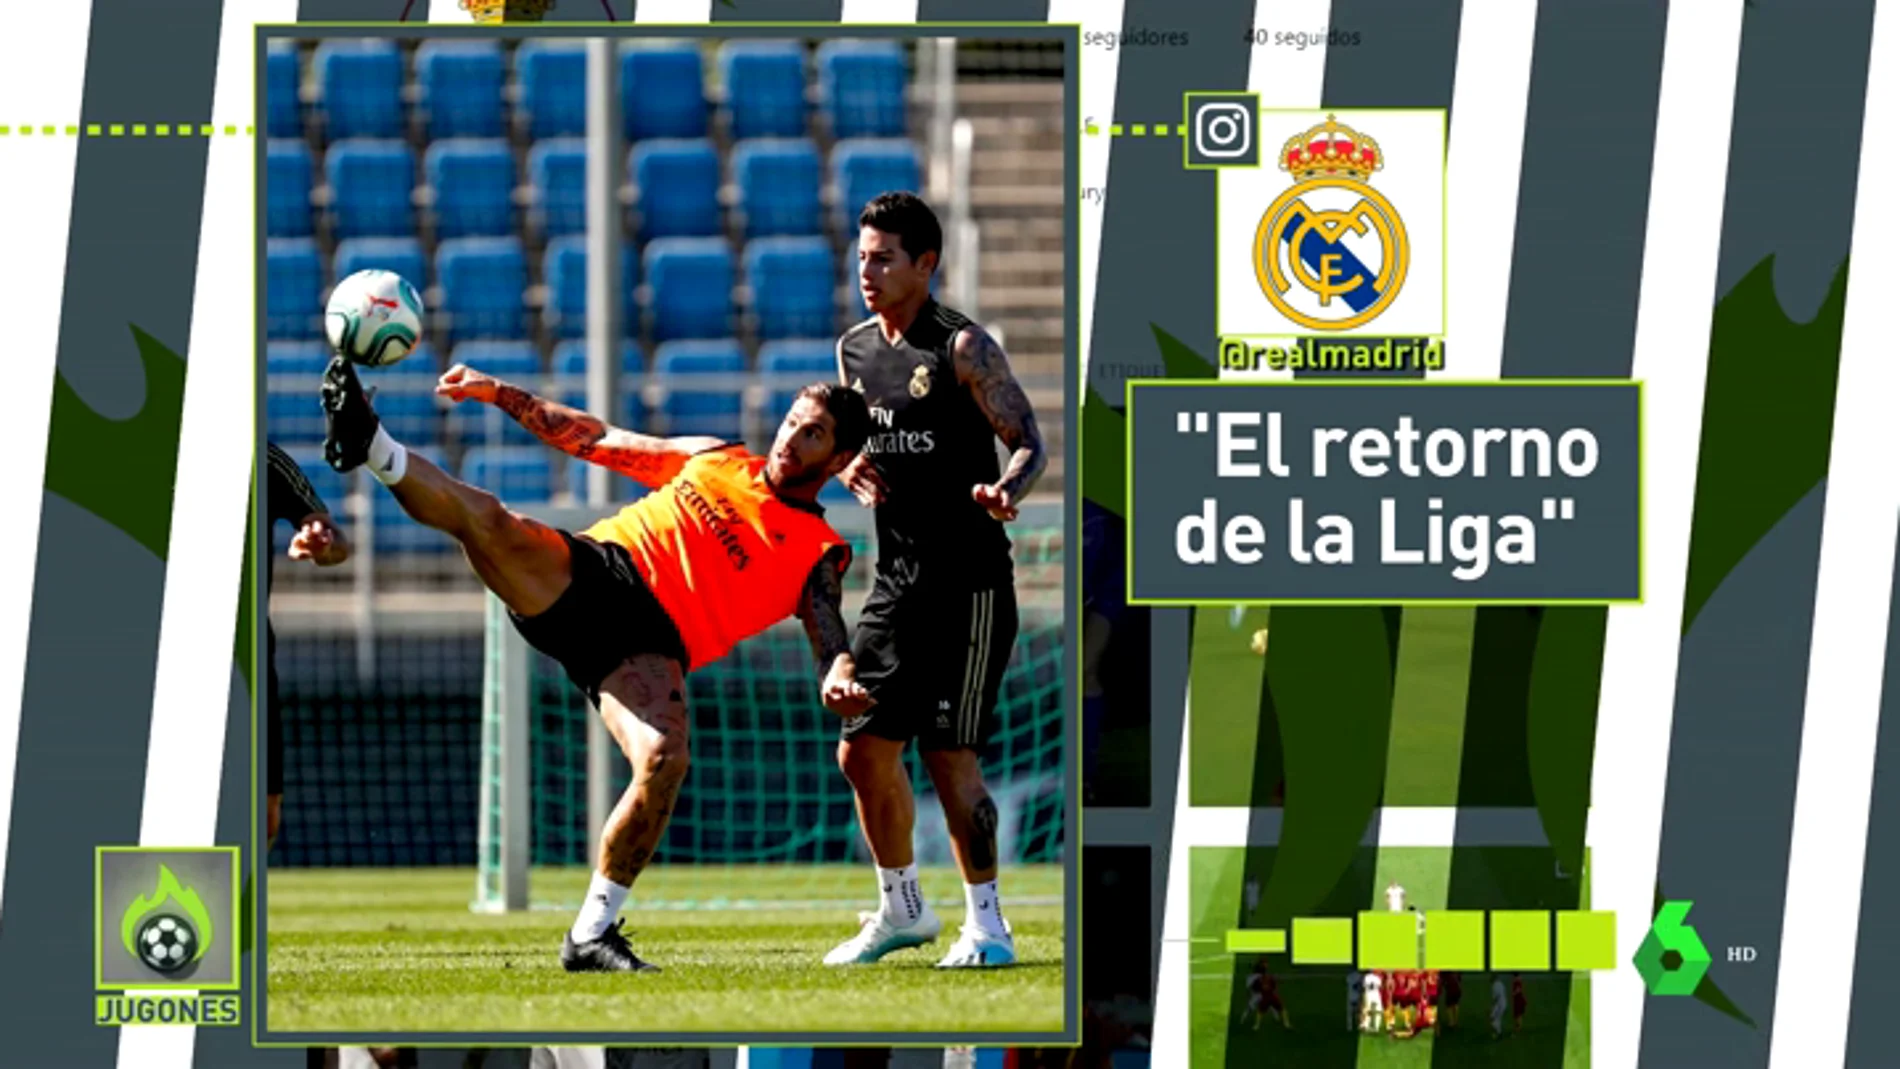 Fotos y 'follows' cómplices: James y su vuelta a la normalidad en el Real Madrid